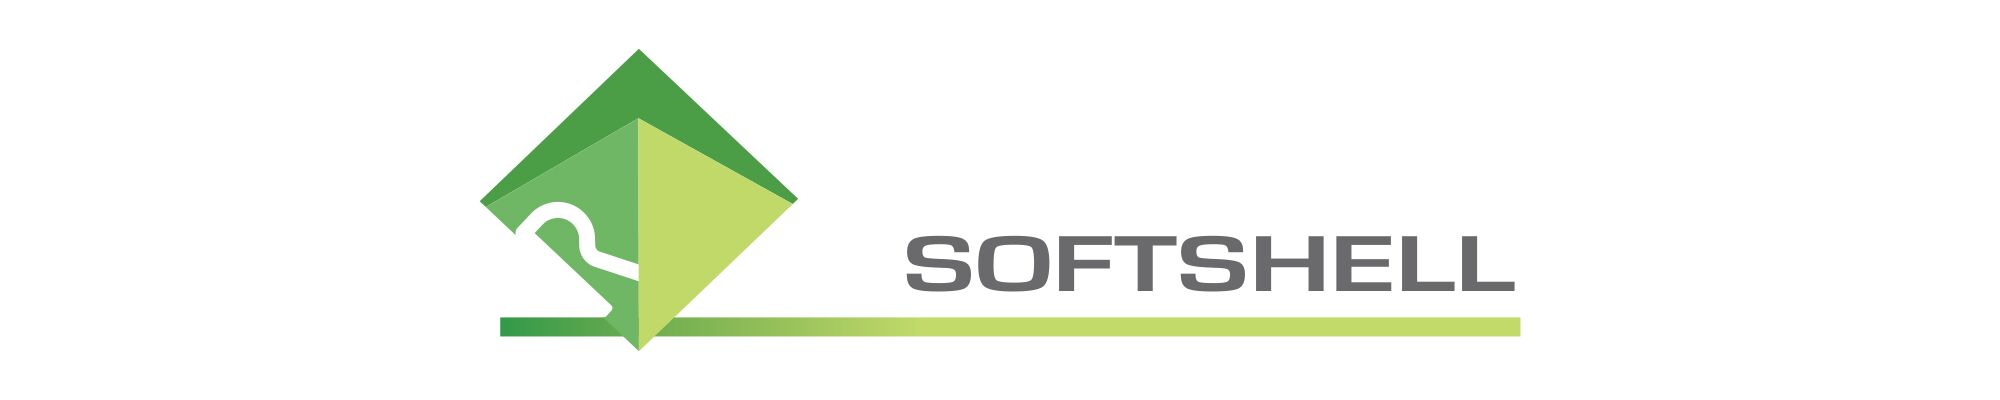 softshell logo